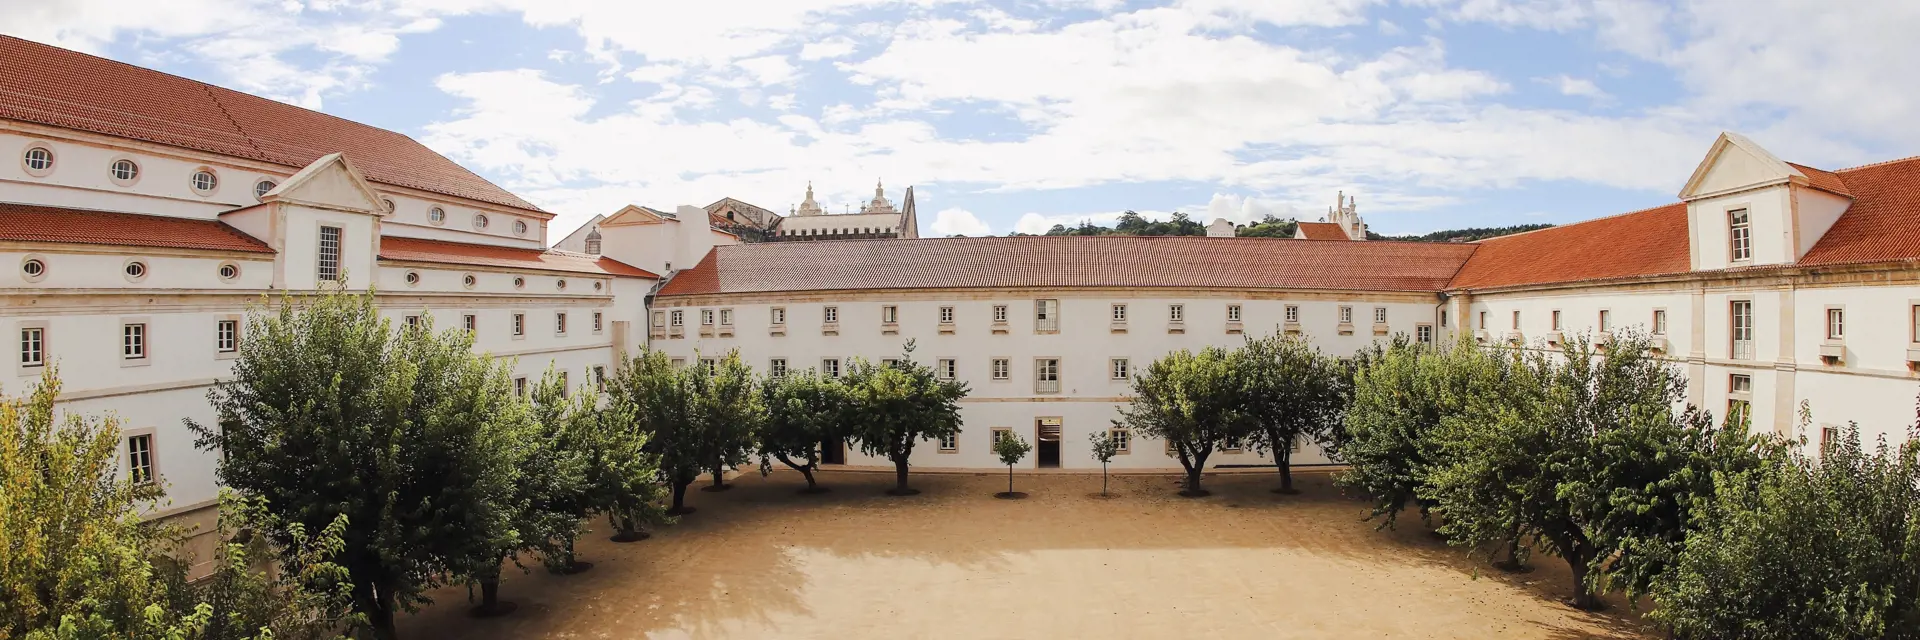 1 montebelo mosteiro alcobaca historic hotel claustro do rachadouro 1